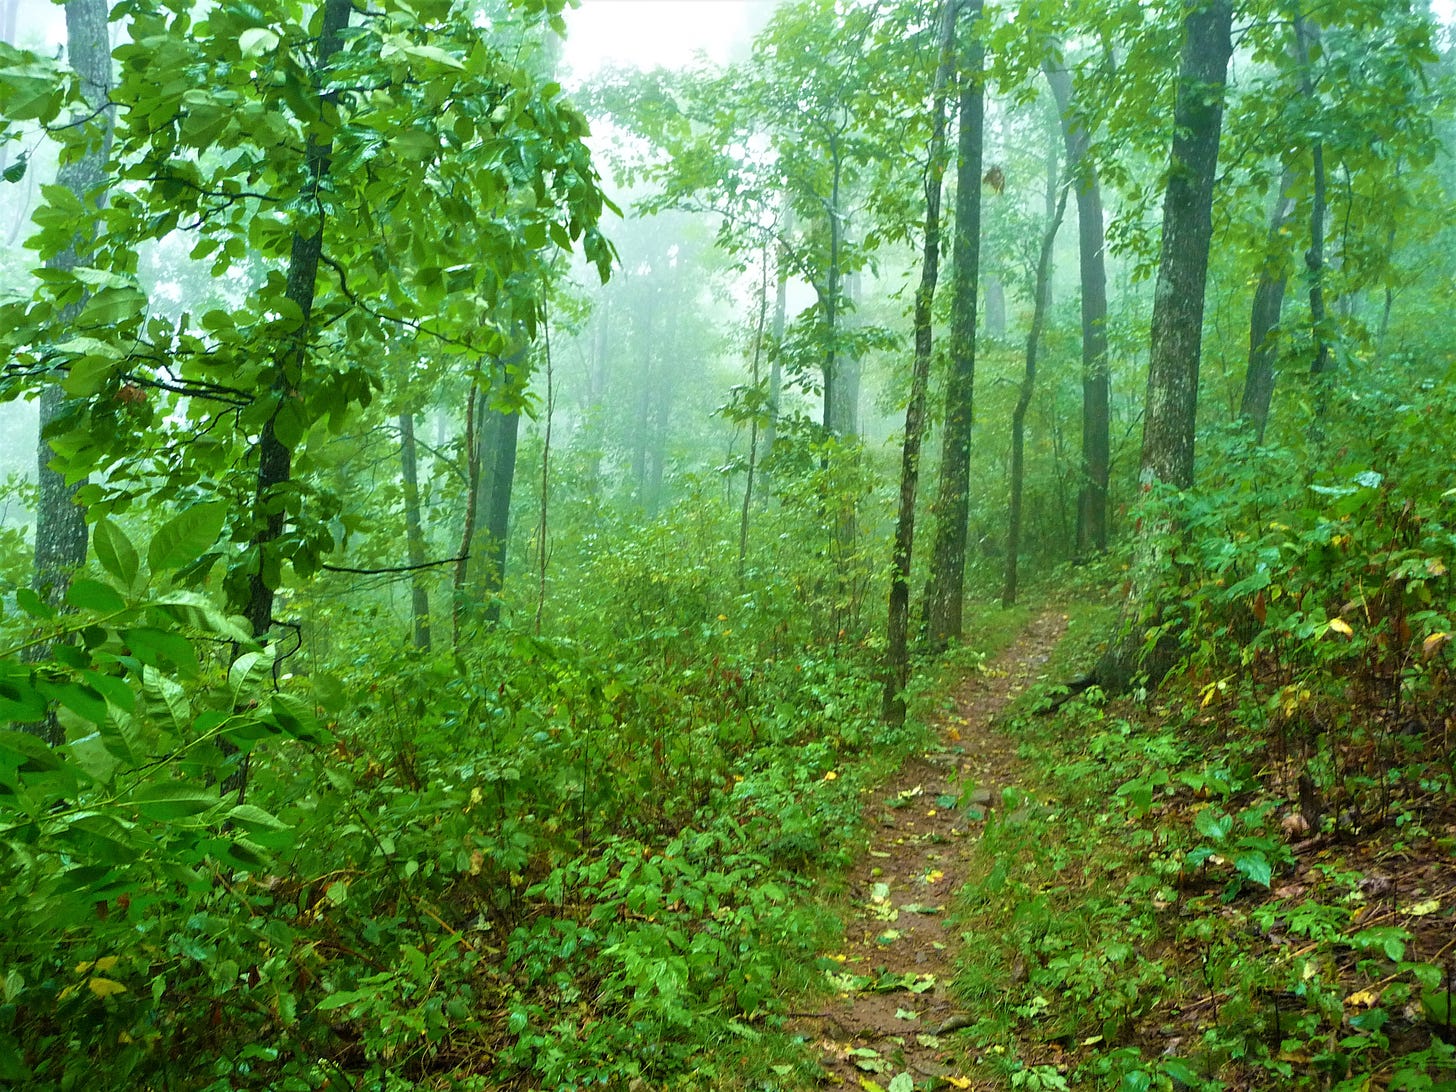 leafy path through green forest